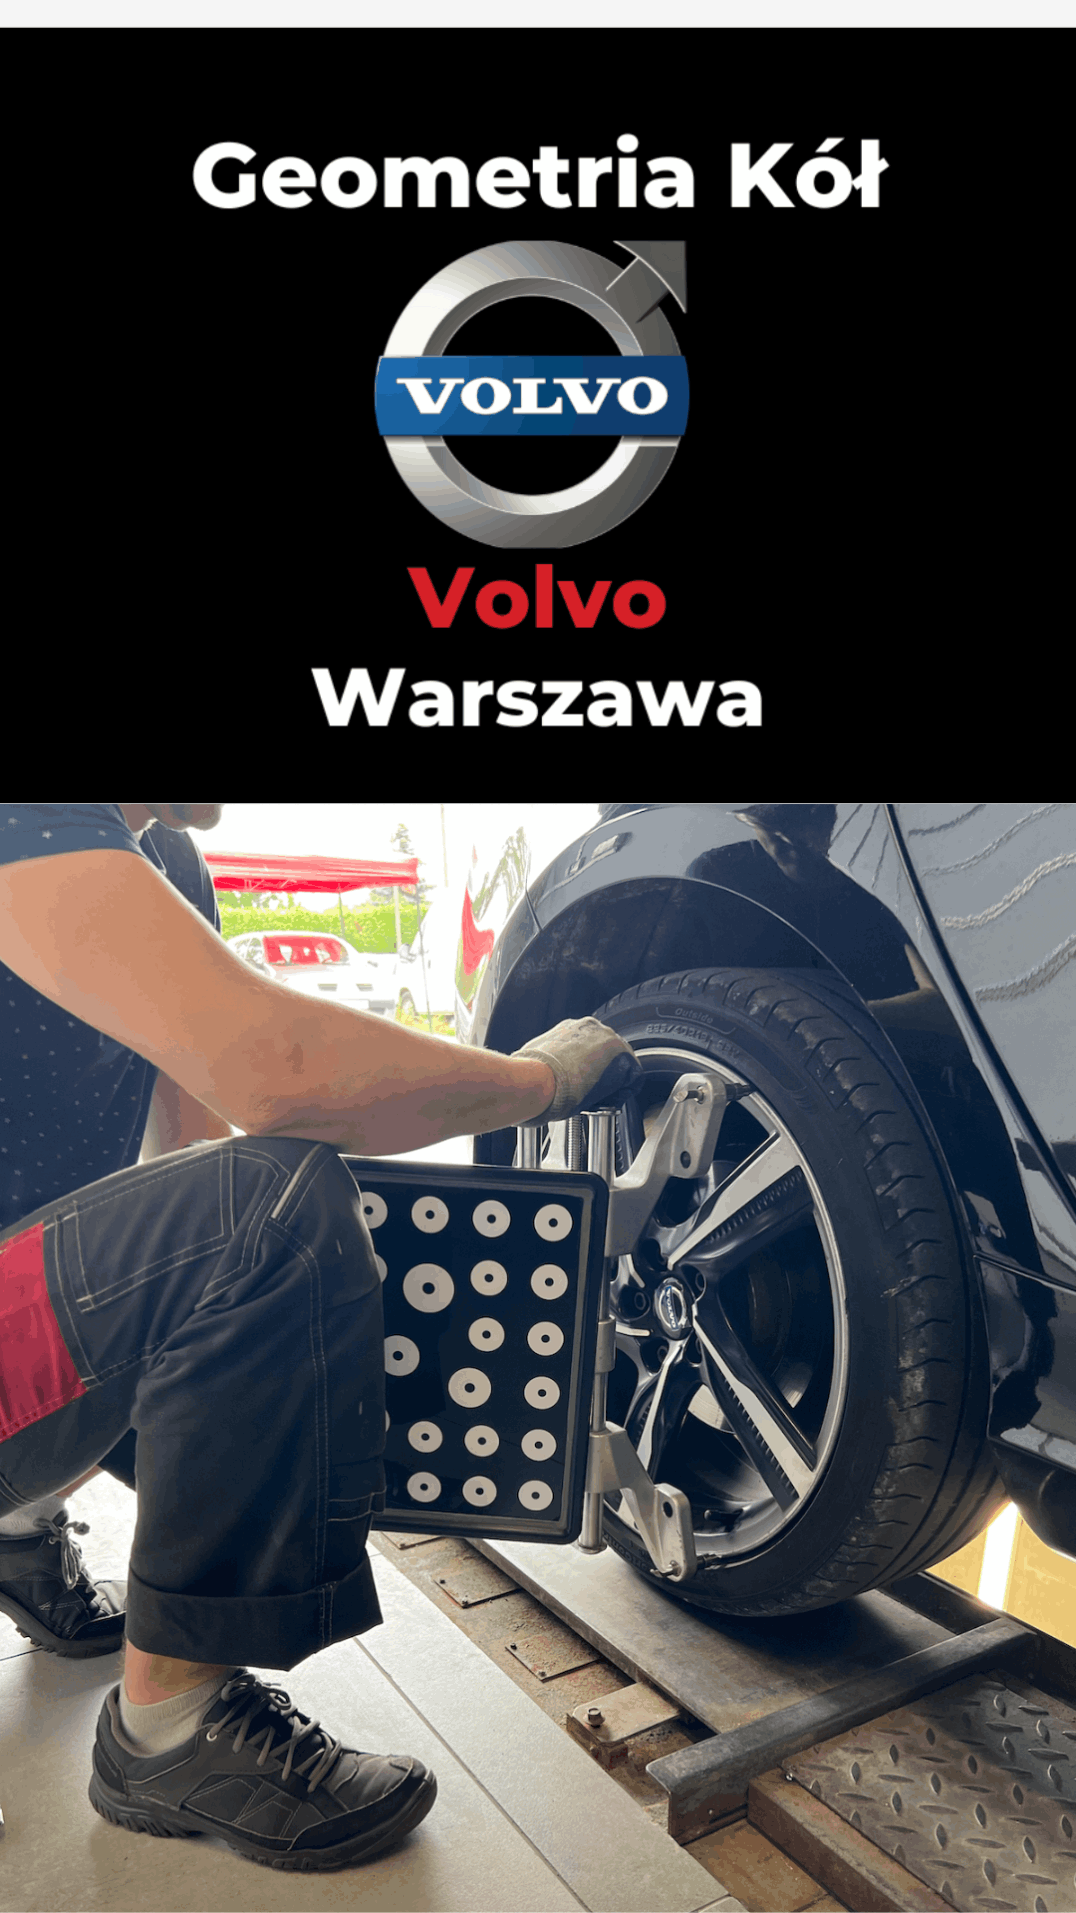 Geometria Kół Volvo Warszawa